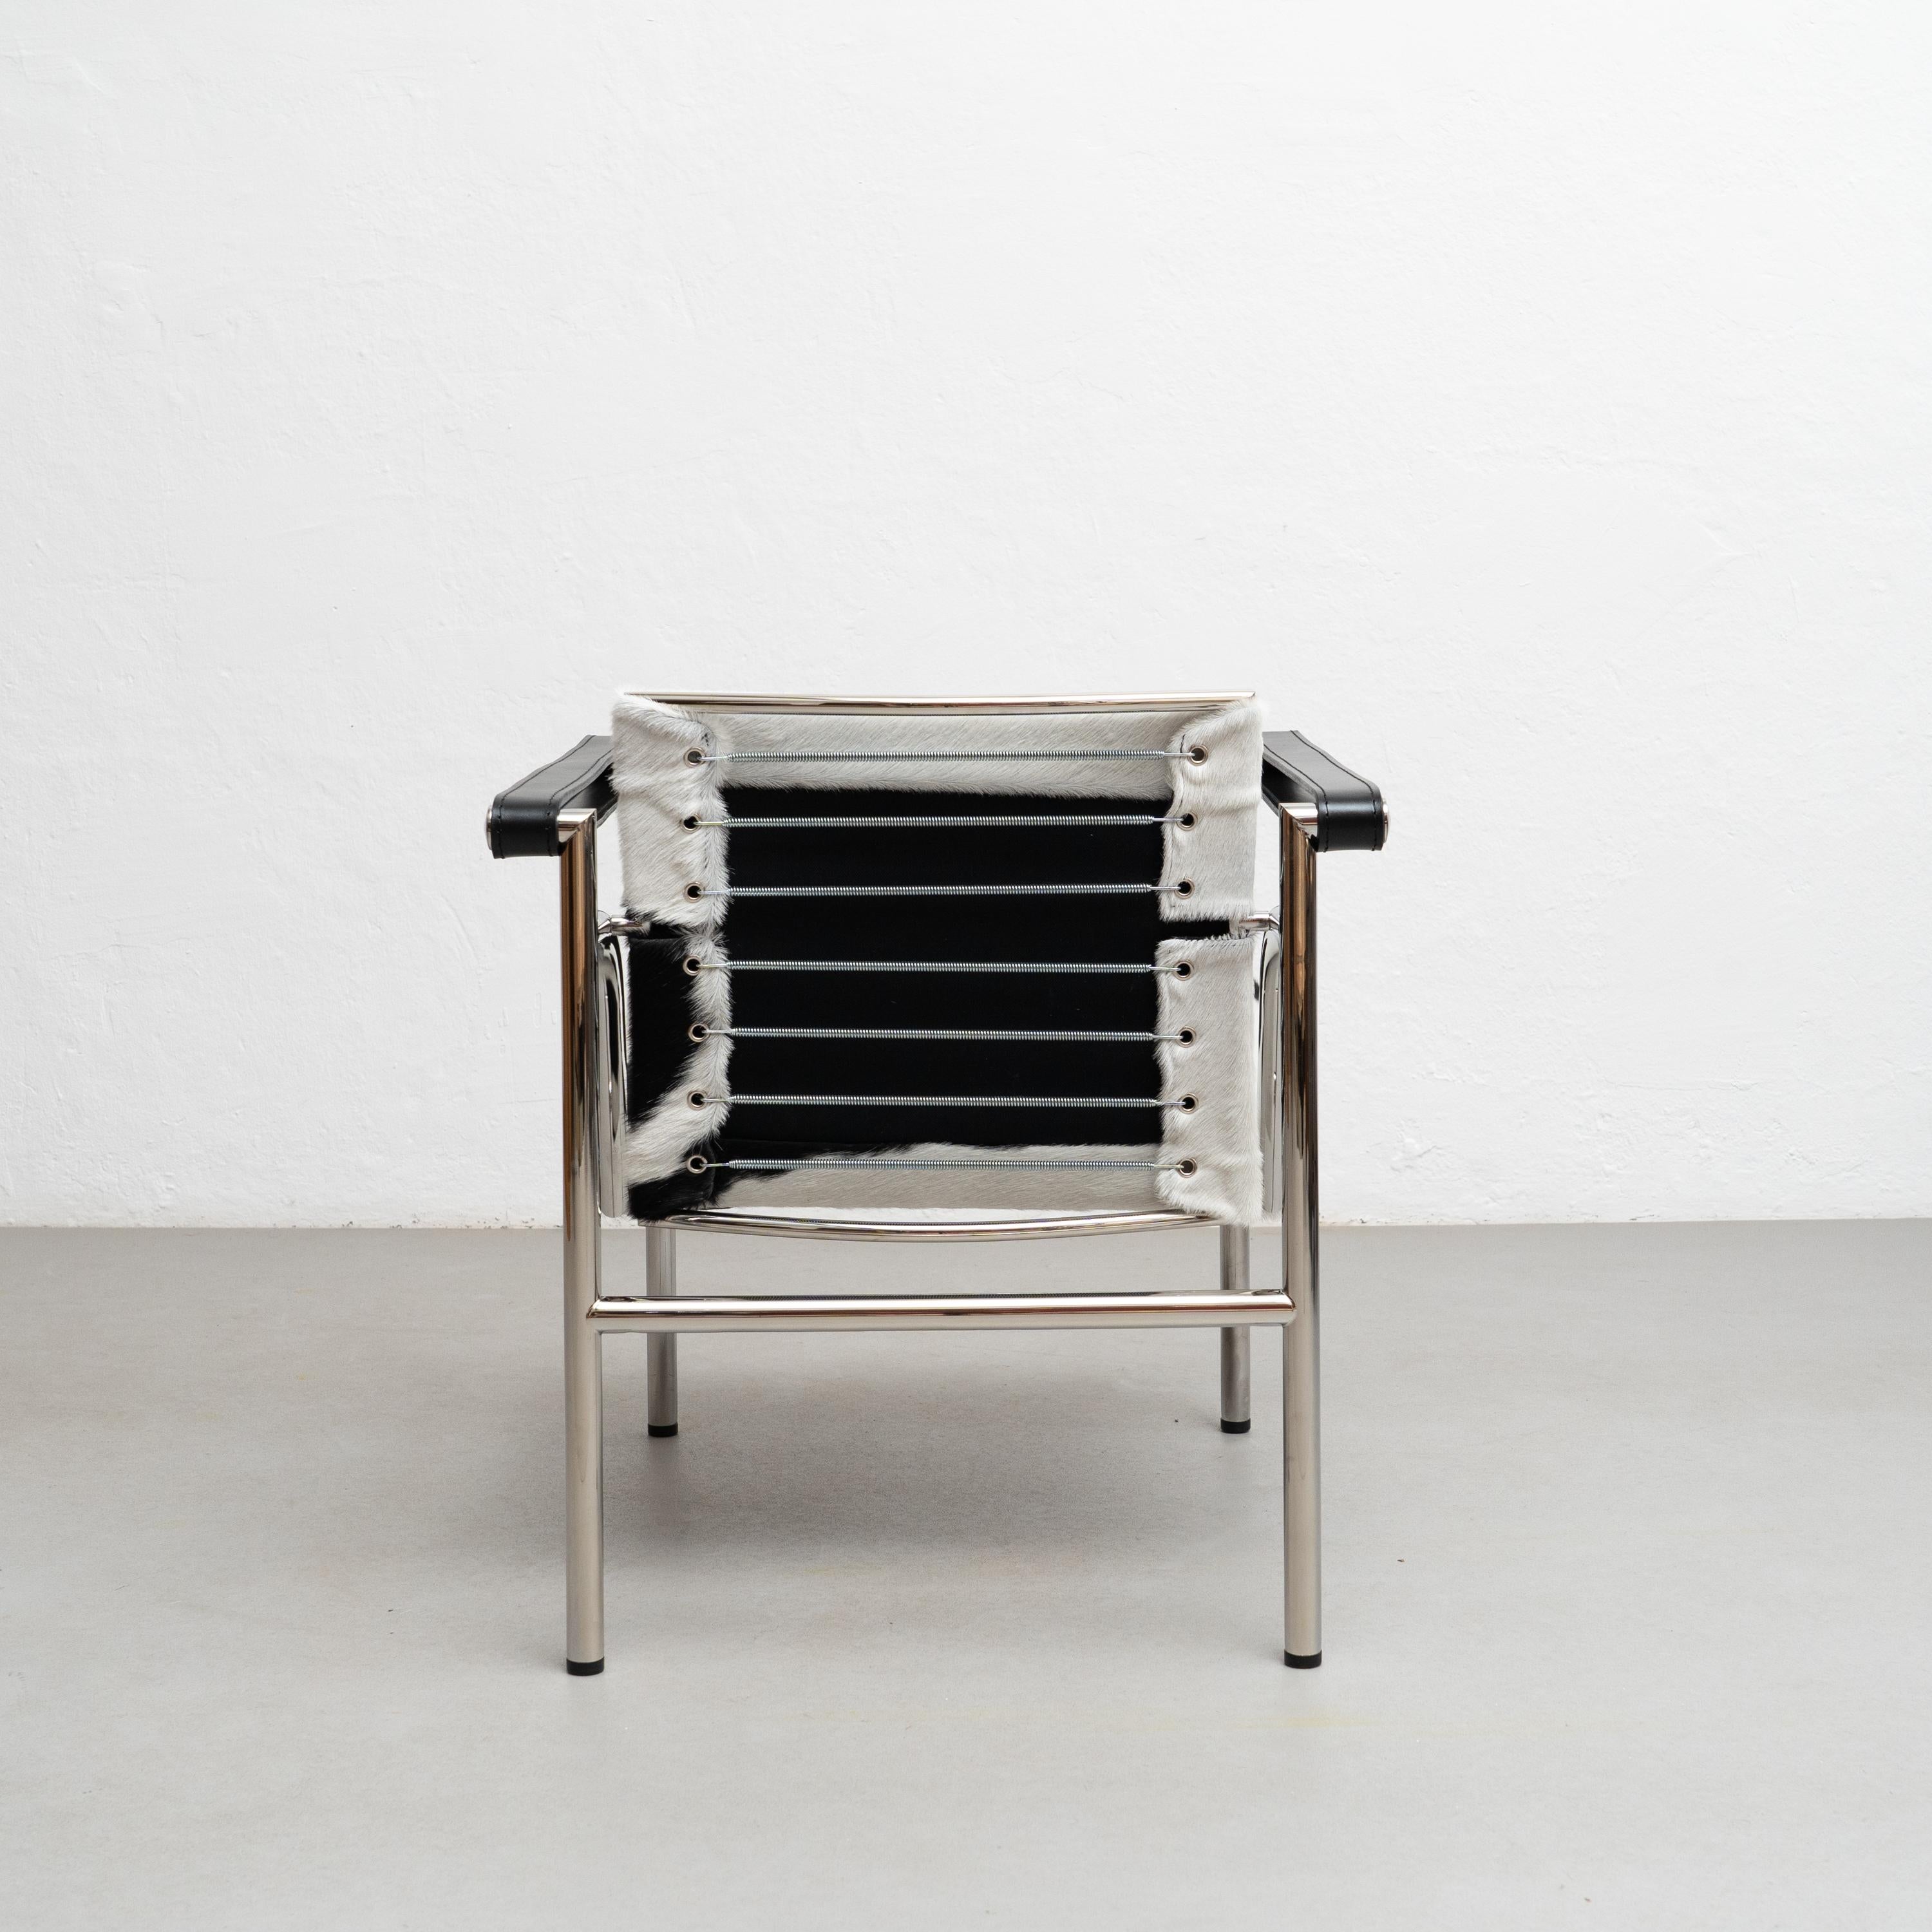 Chaise conçue par Le Corbusier, Pierre Jeanneret, Charlotte Perriand en 1928. Relancé en 1965.
Fabriqué par Cassina en Italie.

Une chaise légère et compacte conçue et présentée au Salon d'Automne de 1929 avec d'autres modèles importants, tels